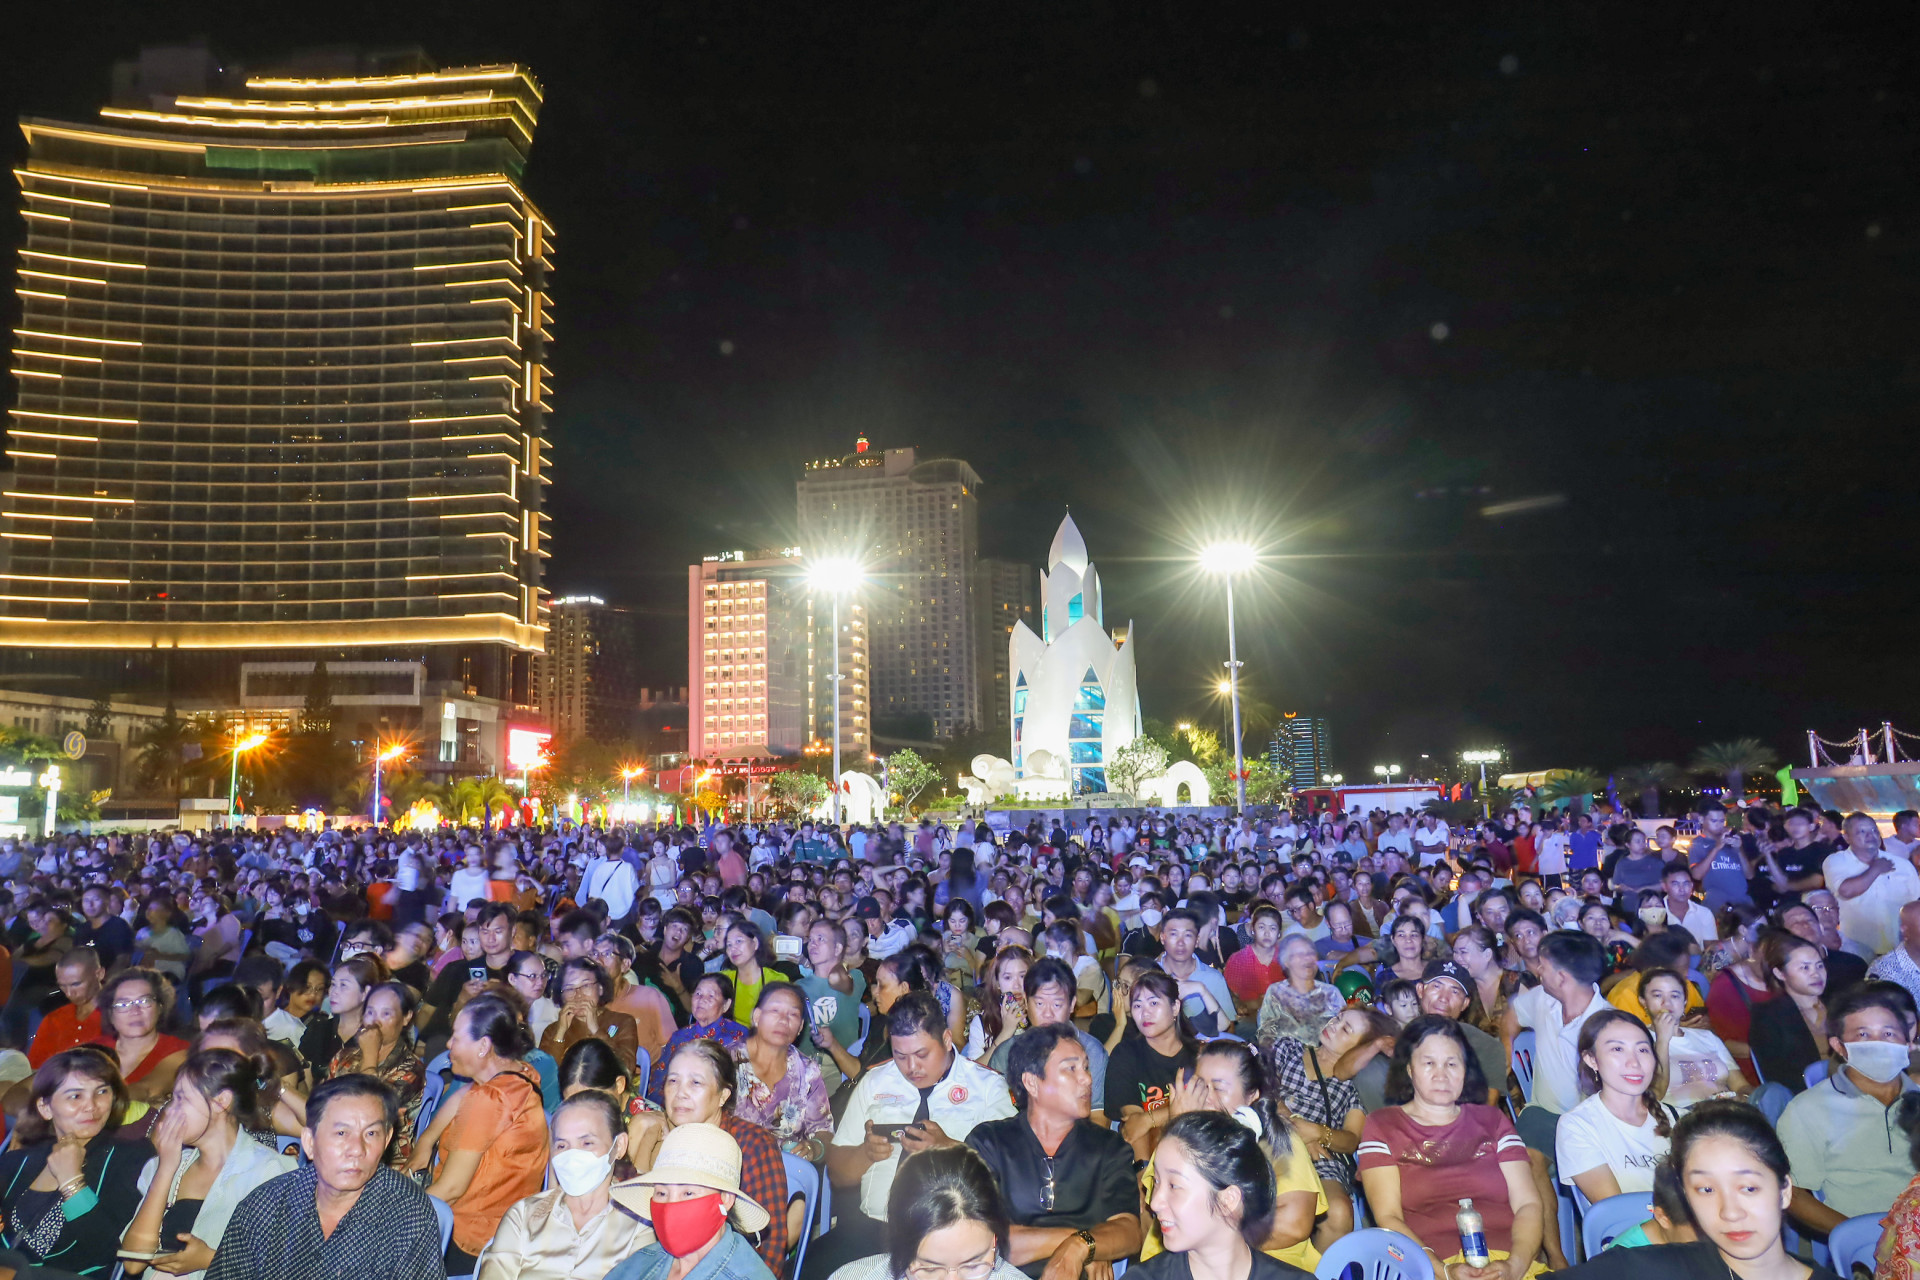 Đông đảo người dân và du khách có mặt ở khu vực Quảng trường 2 tháng 4 để xem chương trình biểu diễn nghệ thuật và chờ đợi xem màn bắn pháo hoa.

